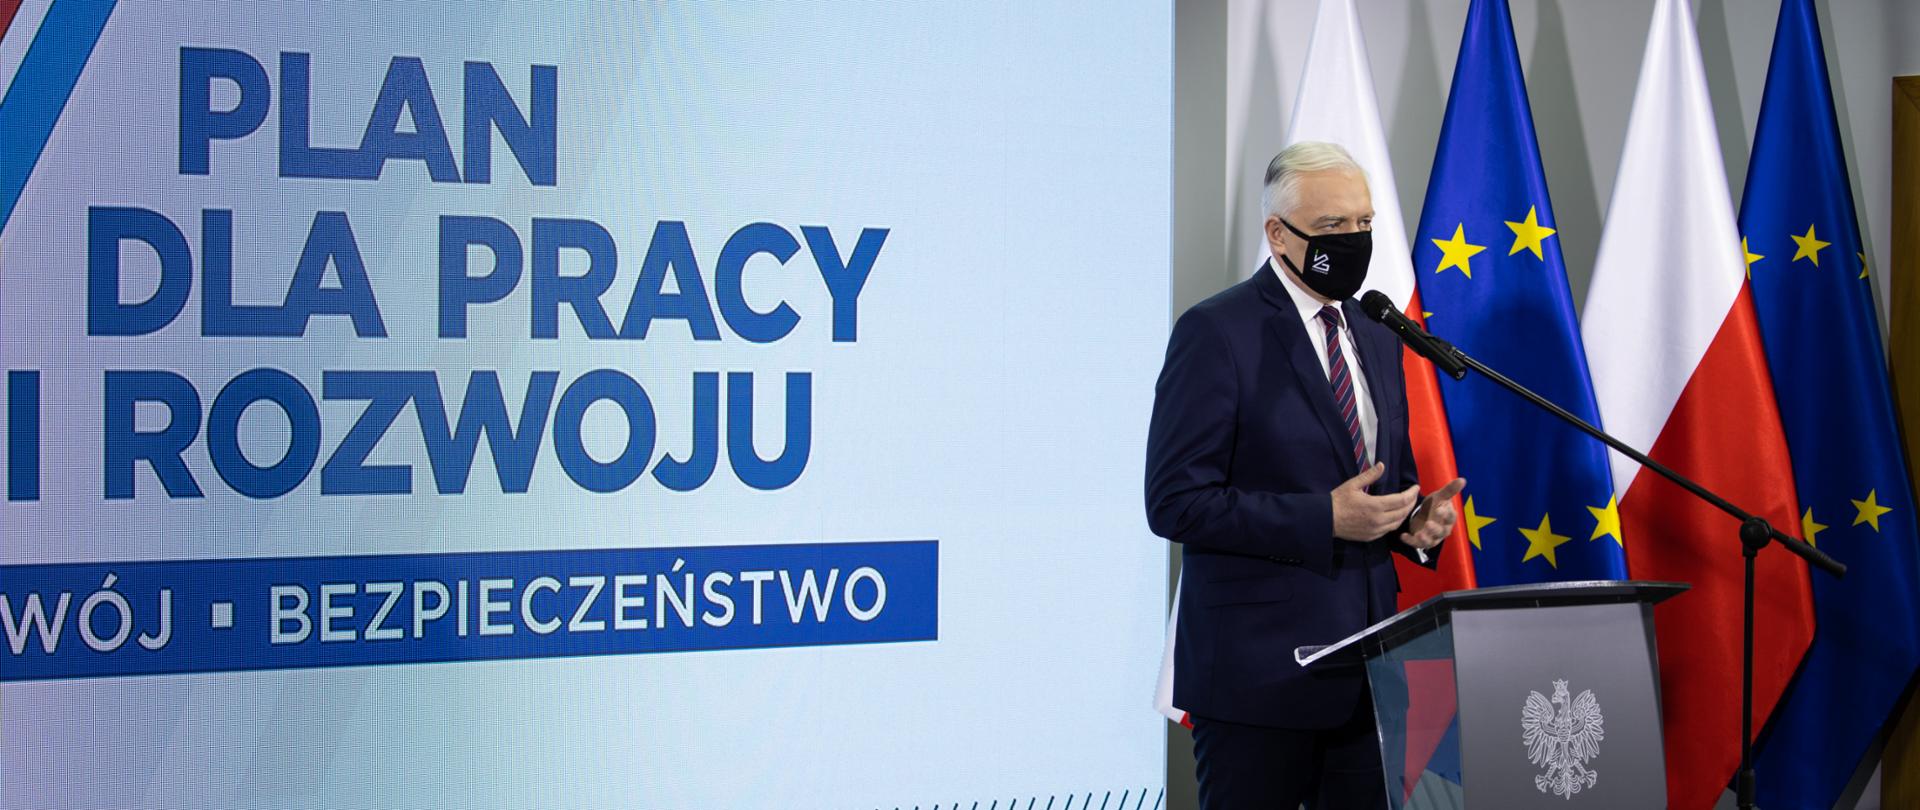 Wicepremier Jarosław Gowin podczas konferencji, na tle logotypu Planu dla Pracy i Rozwoju